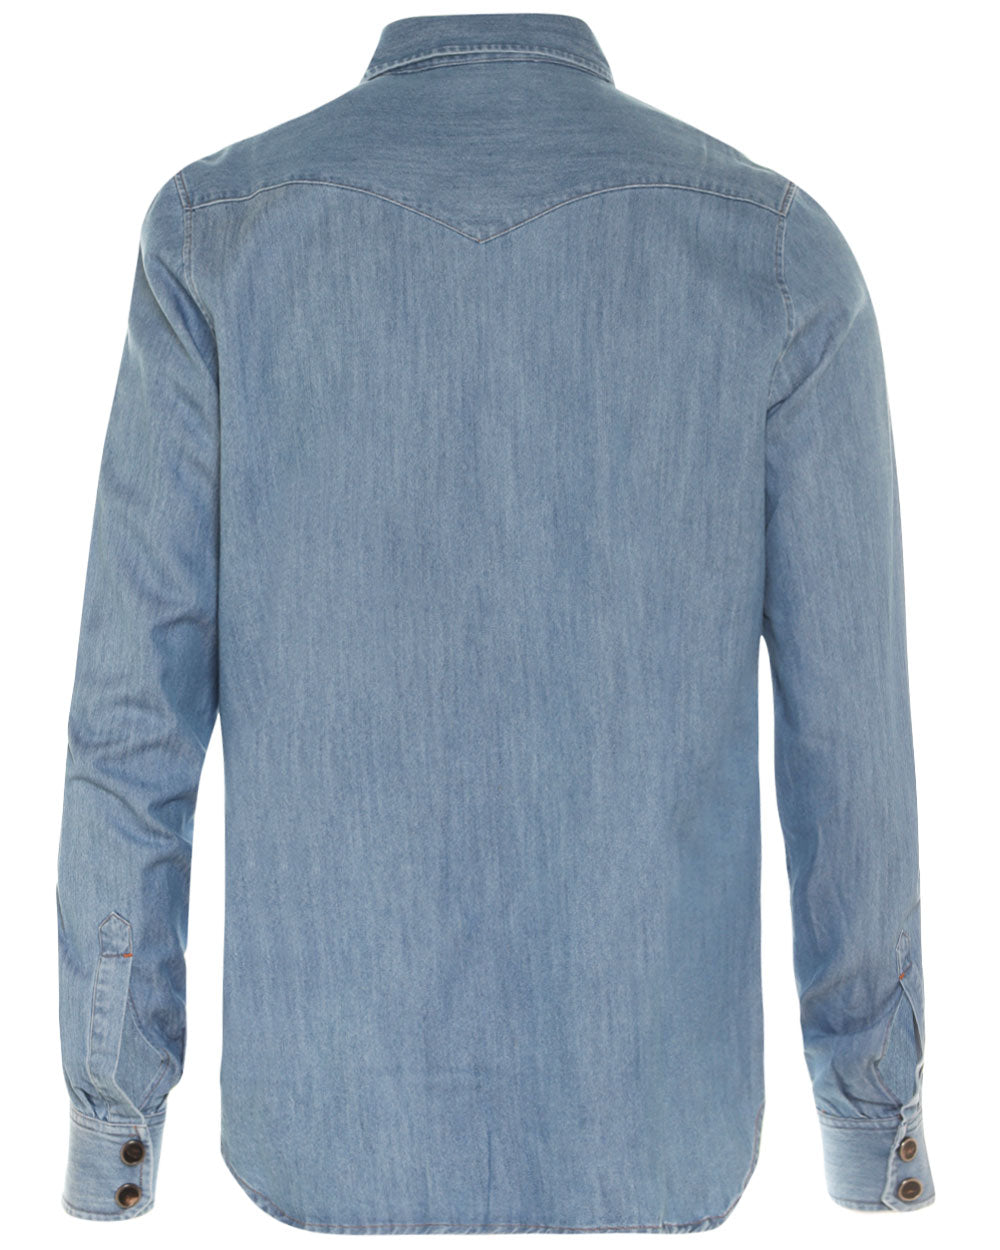 Light Blue Denim Cotton Shirt Jacket